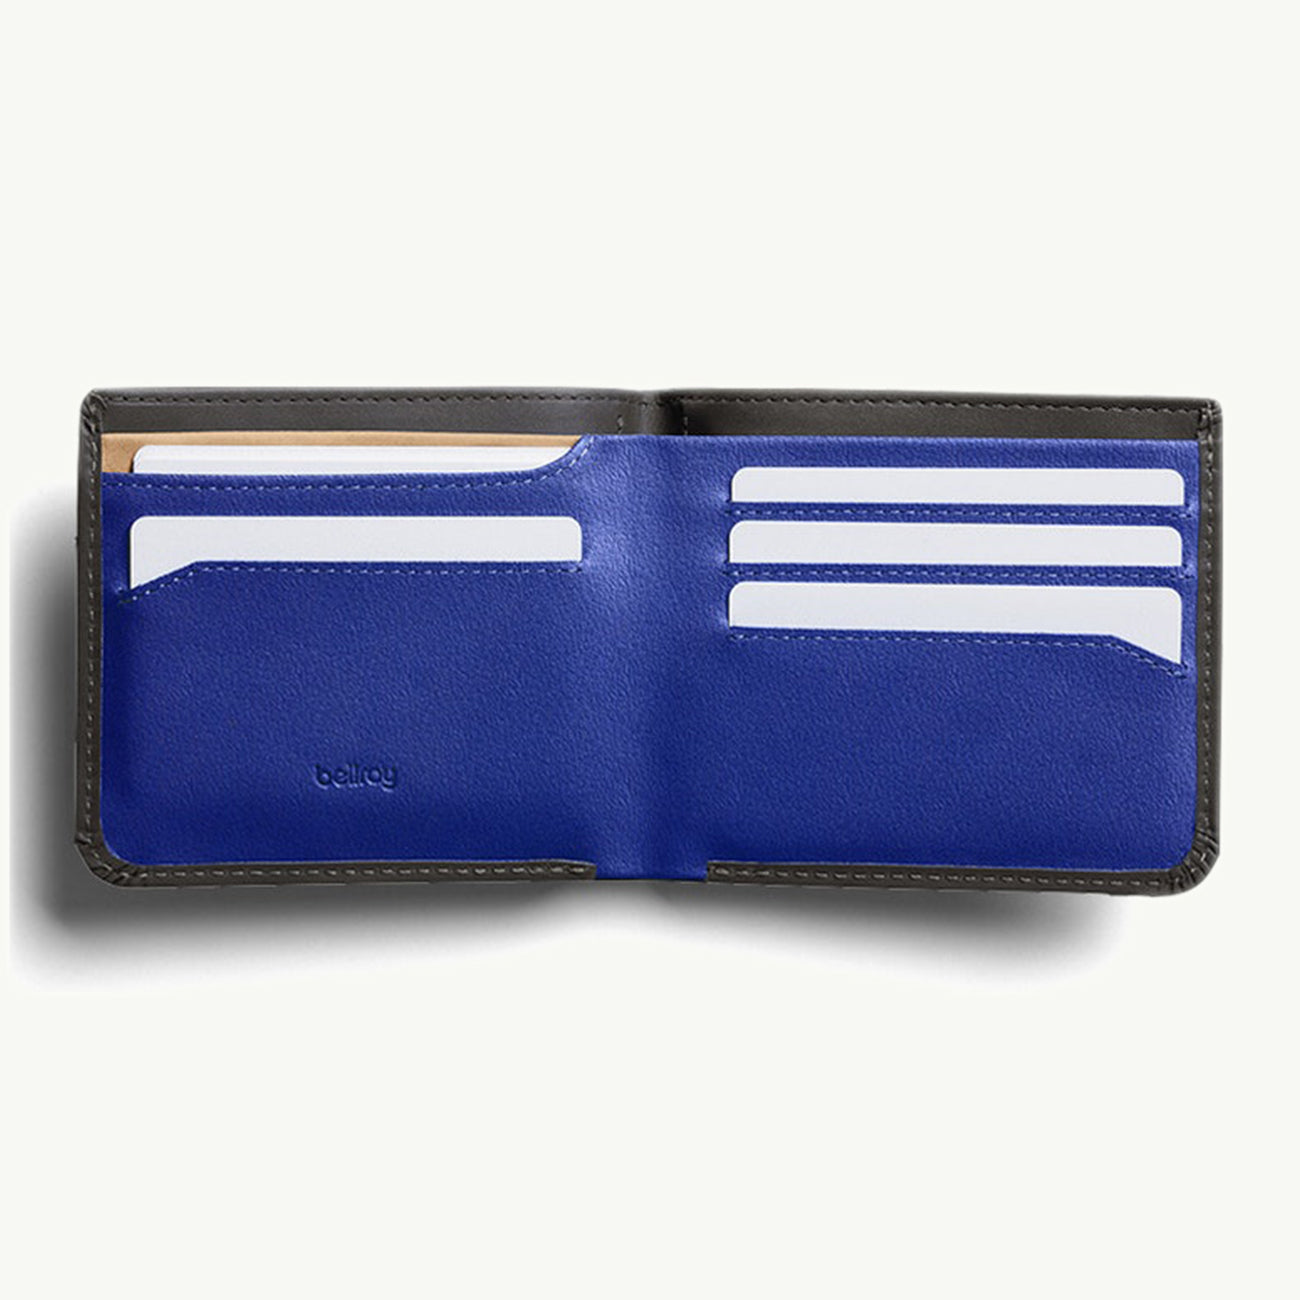 Hide & Seek HI Wallet RFID - Charcoal/Cobalt